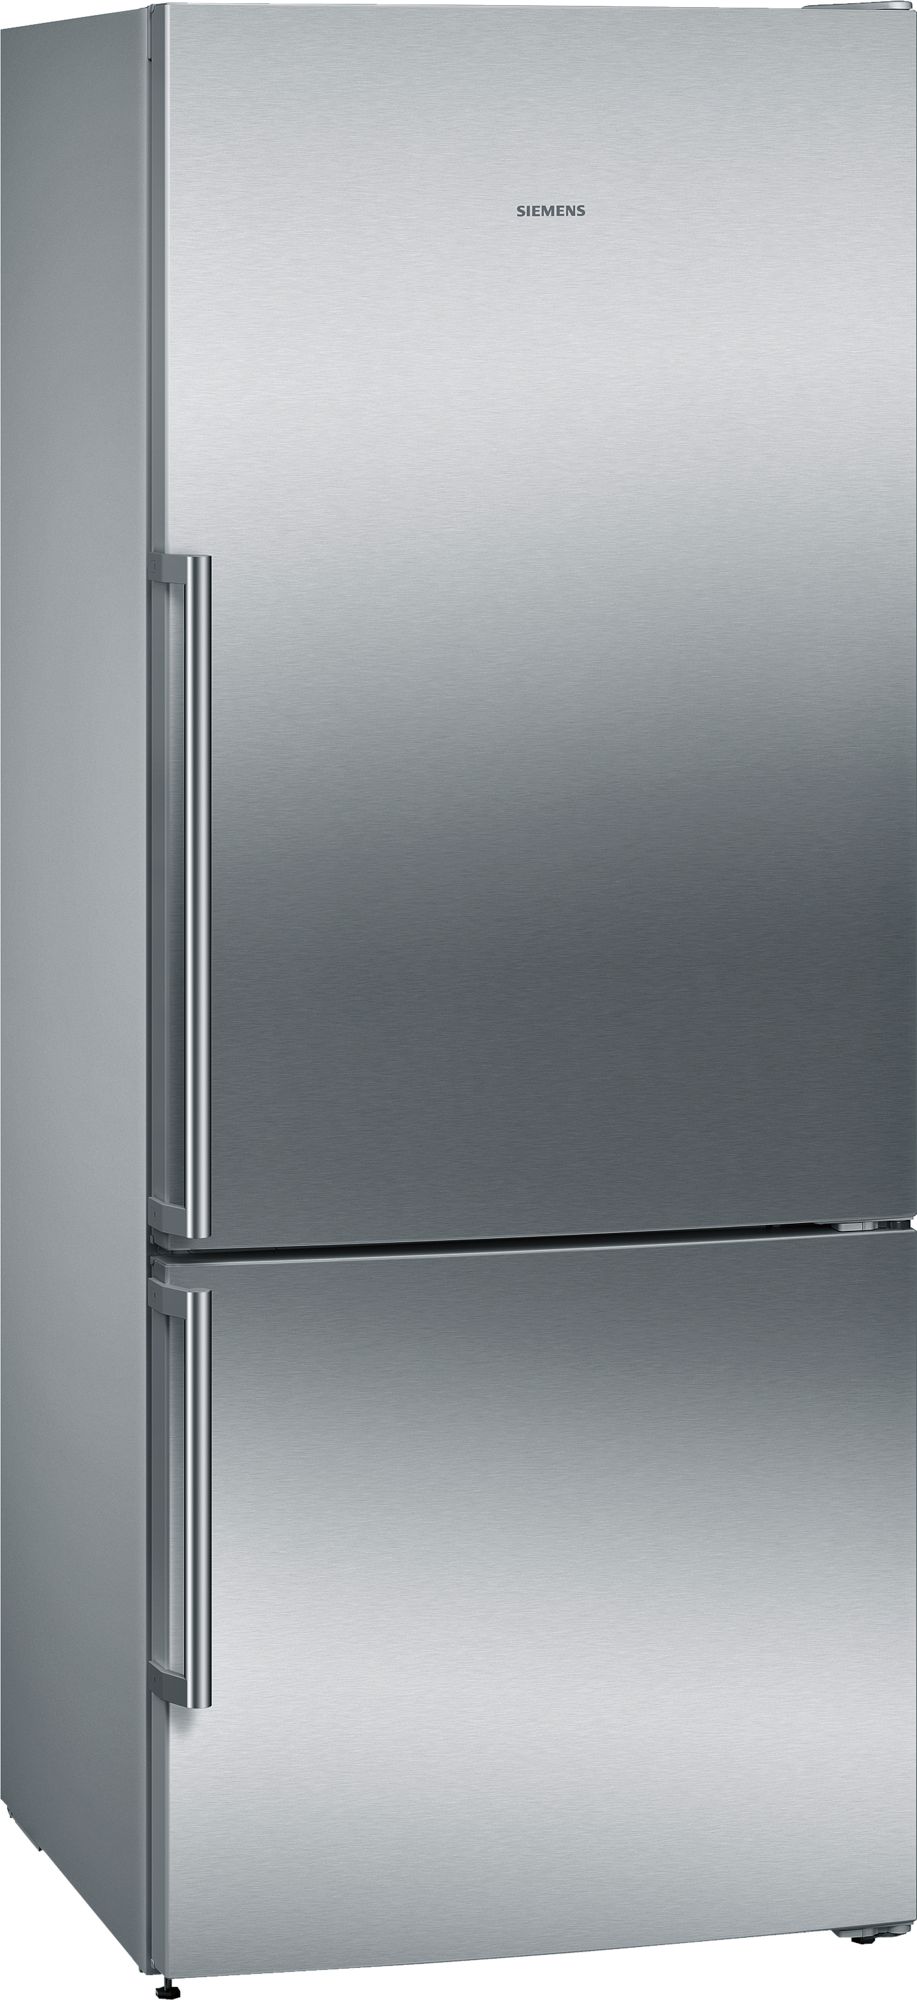 iQ500 Alttan Donduruculu Buzdolabı 75 cm, Kolay temizlenebilir Inox